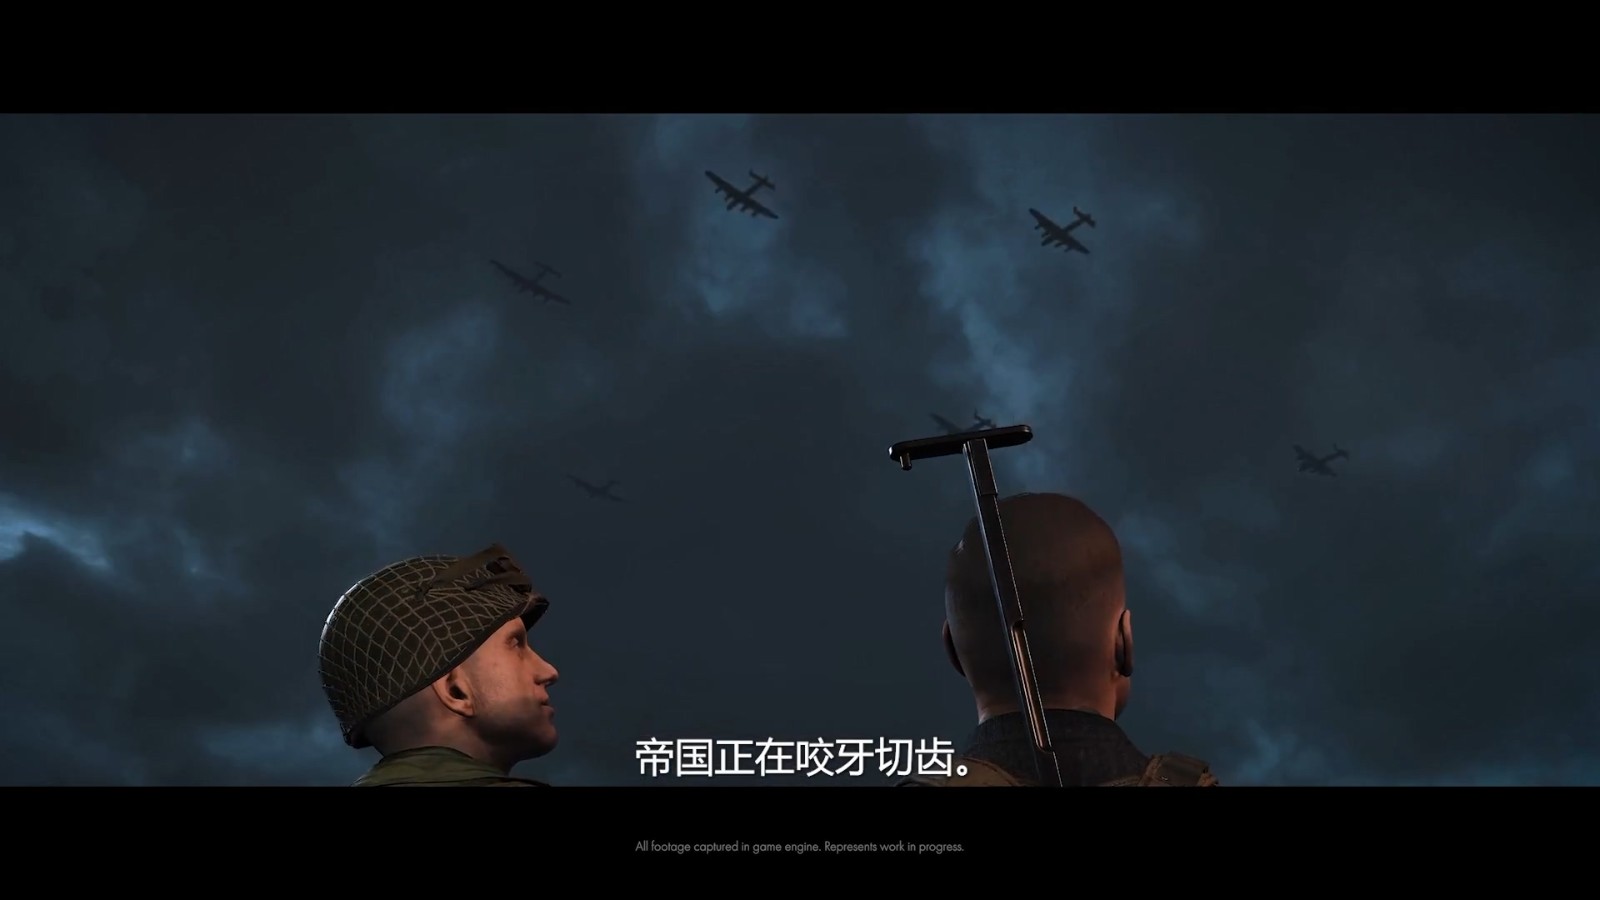 《狙击精英5》全新中字预告 5月26日登陆全平台